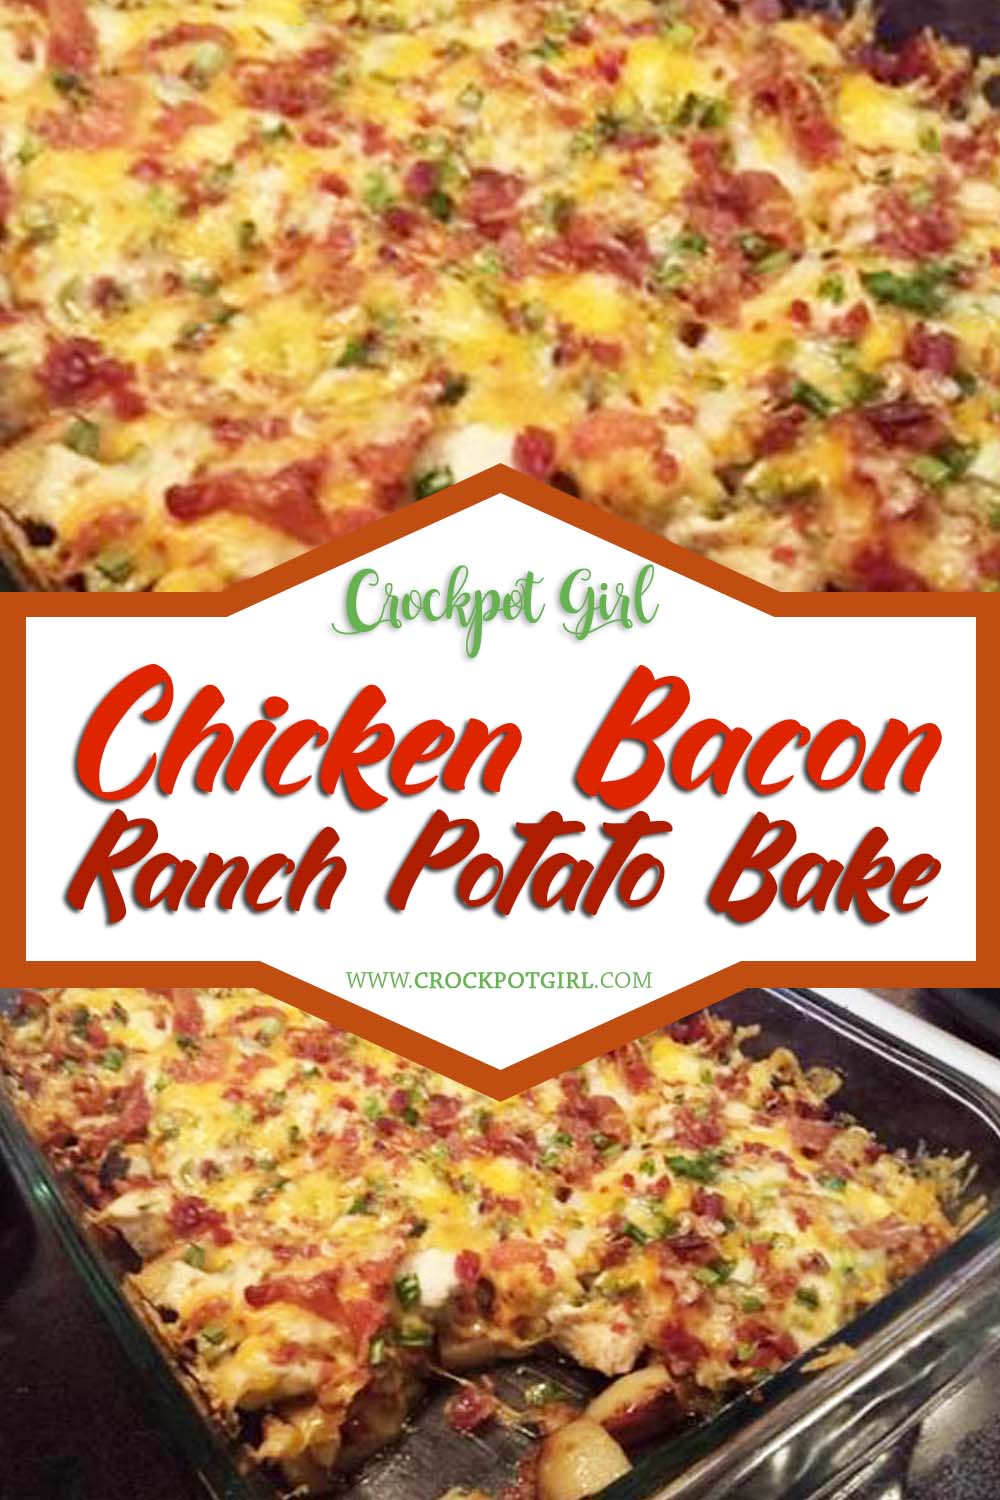 Chicken Bacon Ranch Potato Bake Recipe